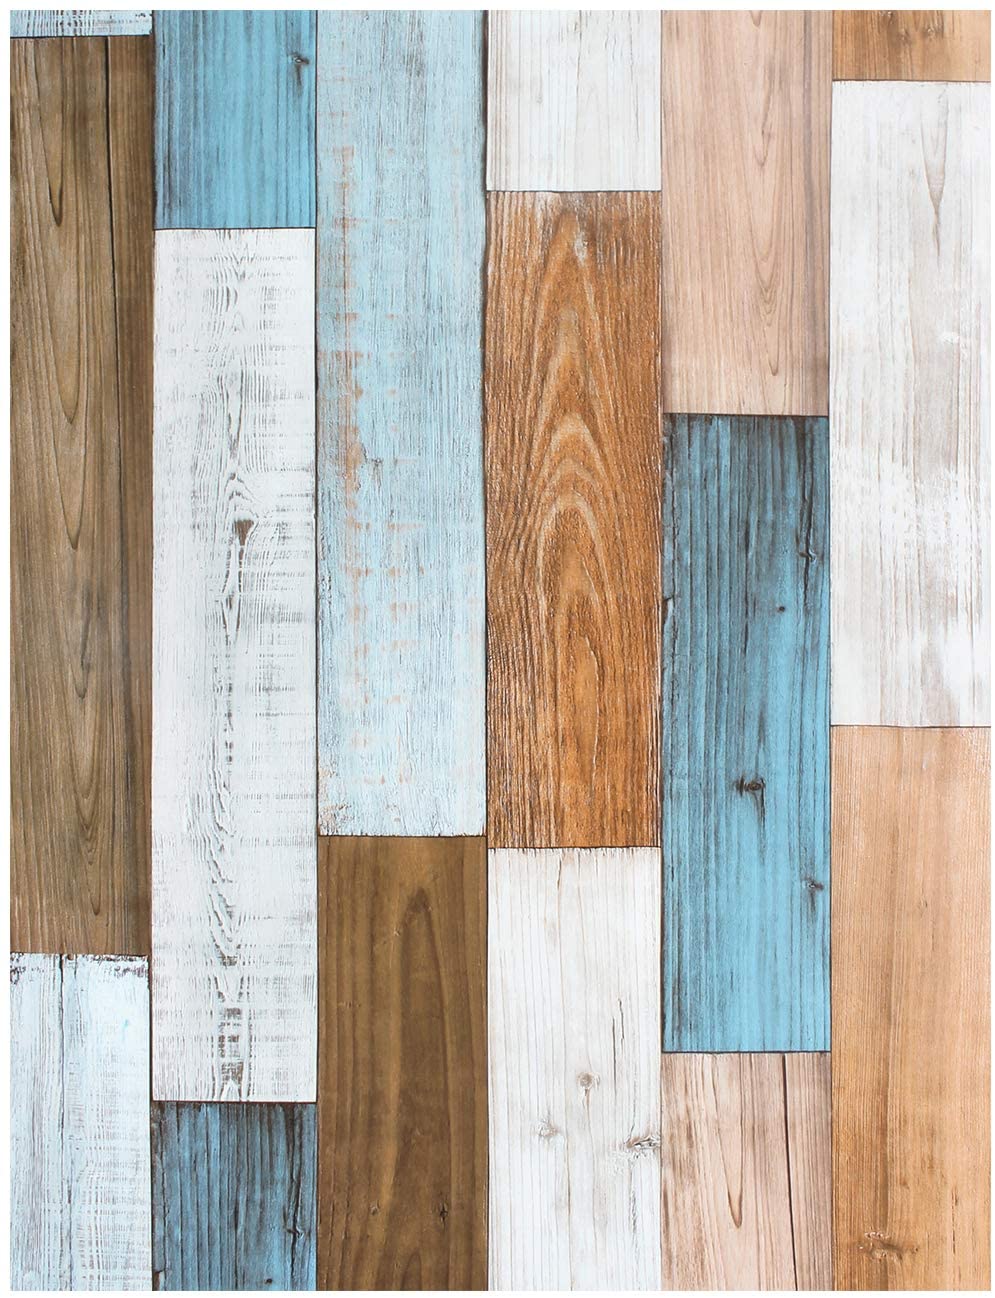 LUCKYYJ Schälen Und Stock Tapete 3D Holz Planke Vinyl Selbst Klebstoff Kontakt Zauberstab papiere Abnehmbare Hause Dekorative Zauberstab Aufkleber: 45x100cm